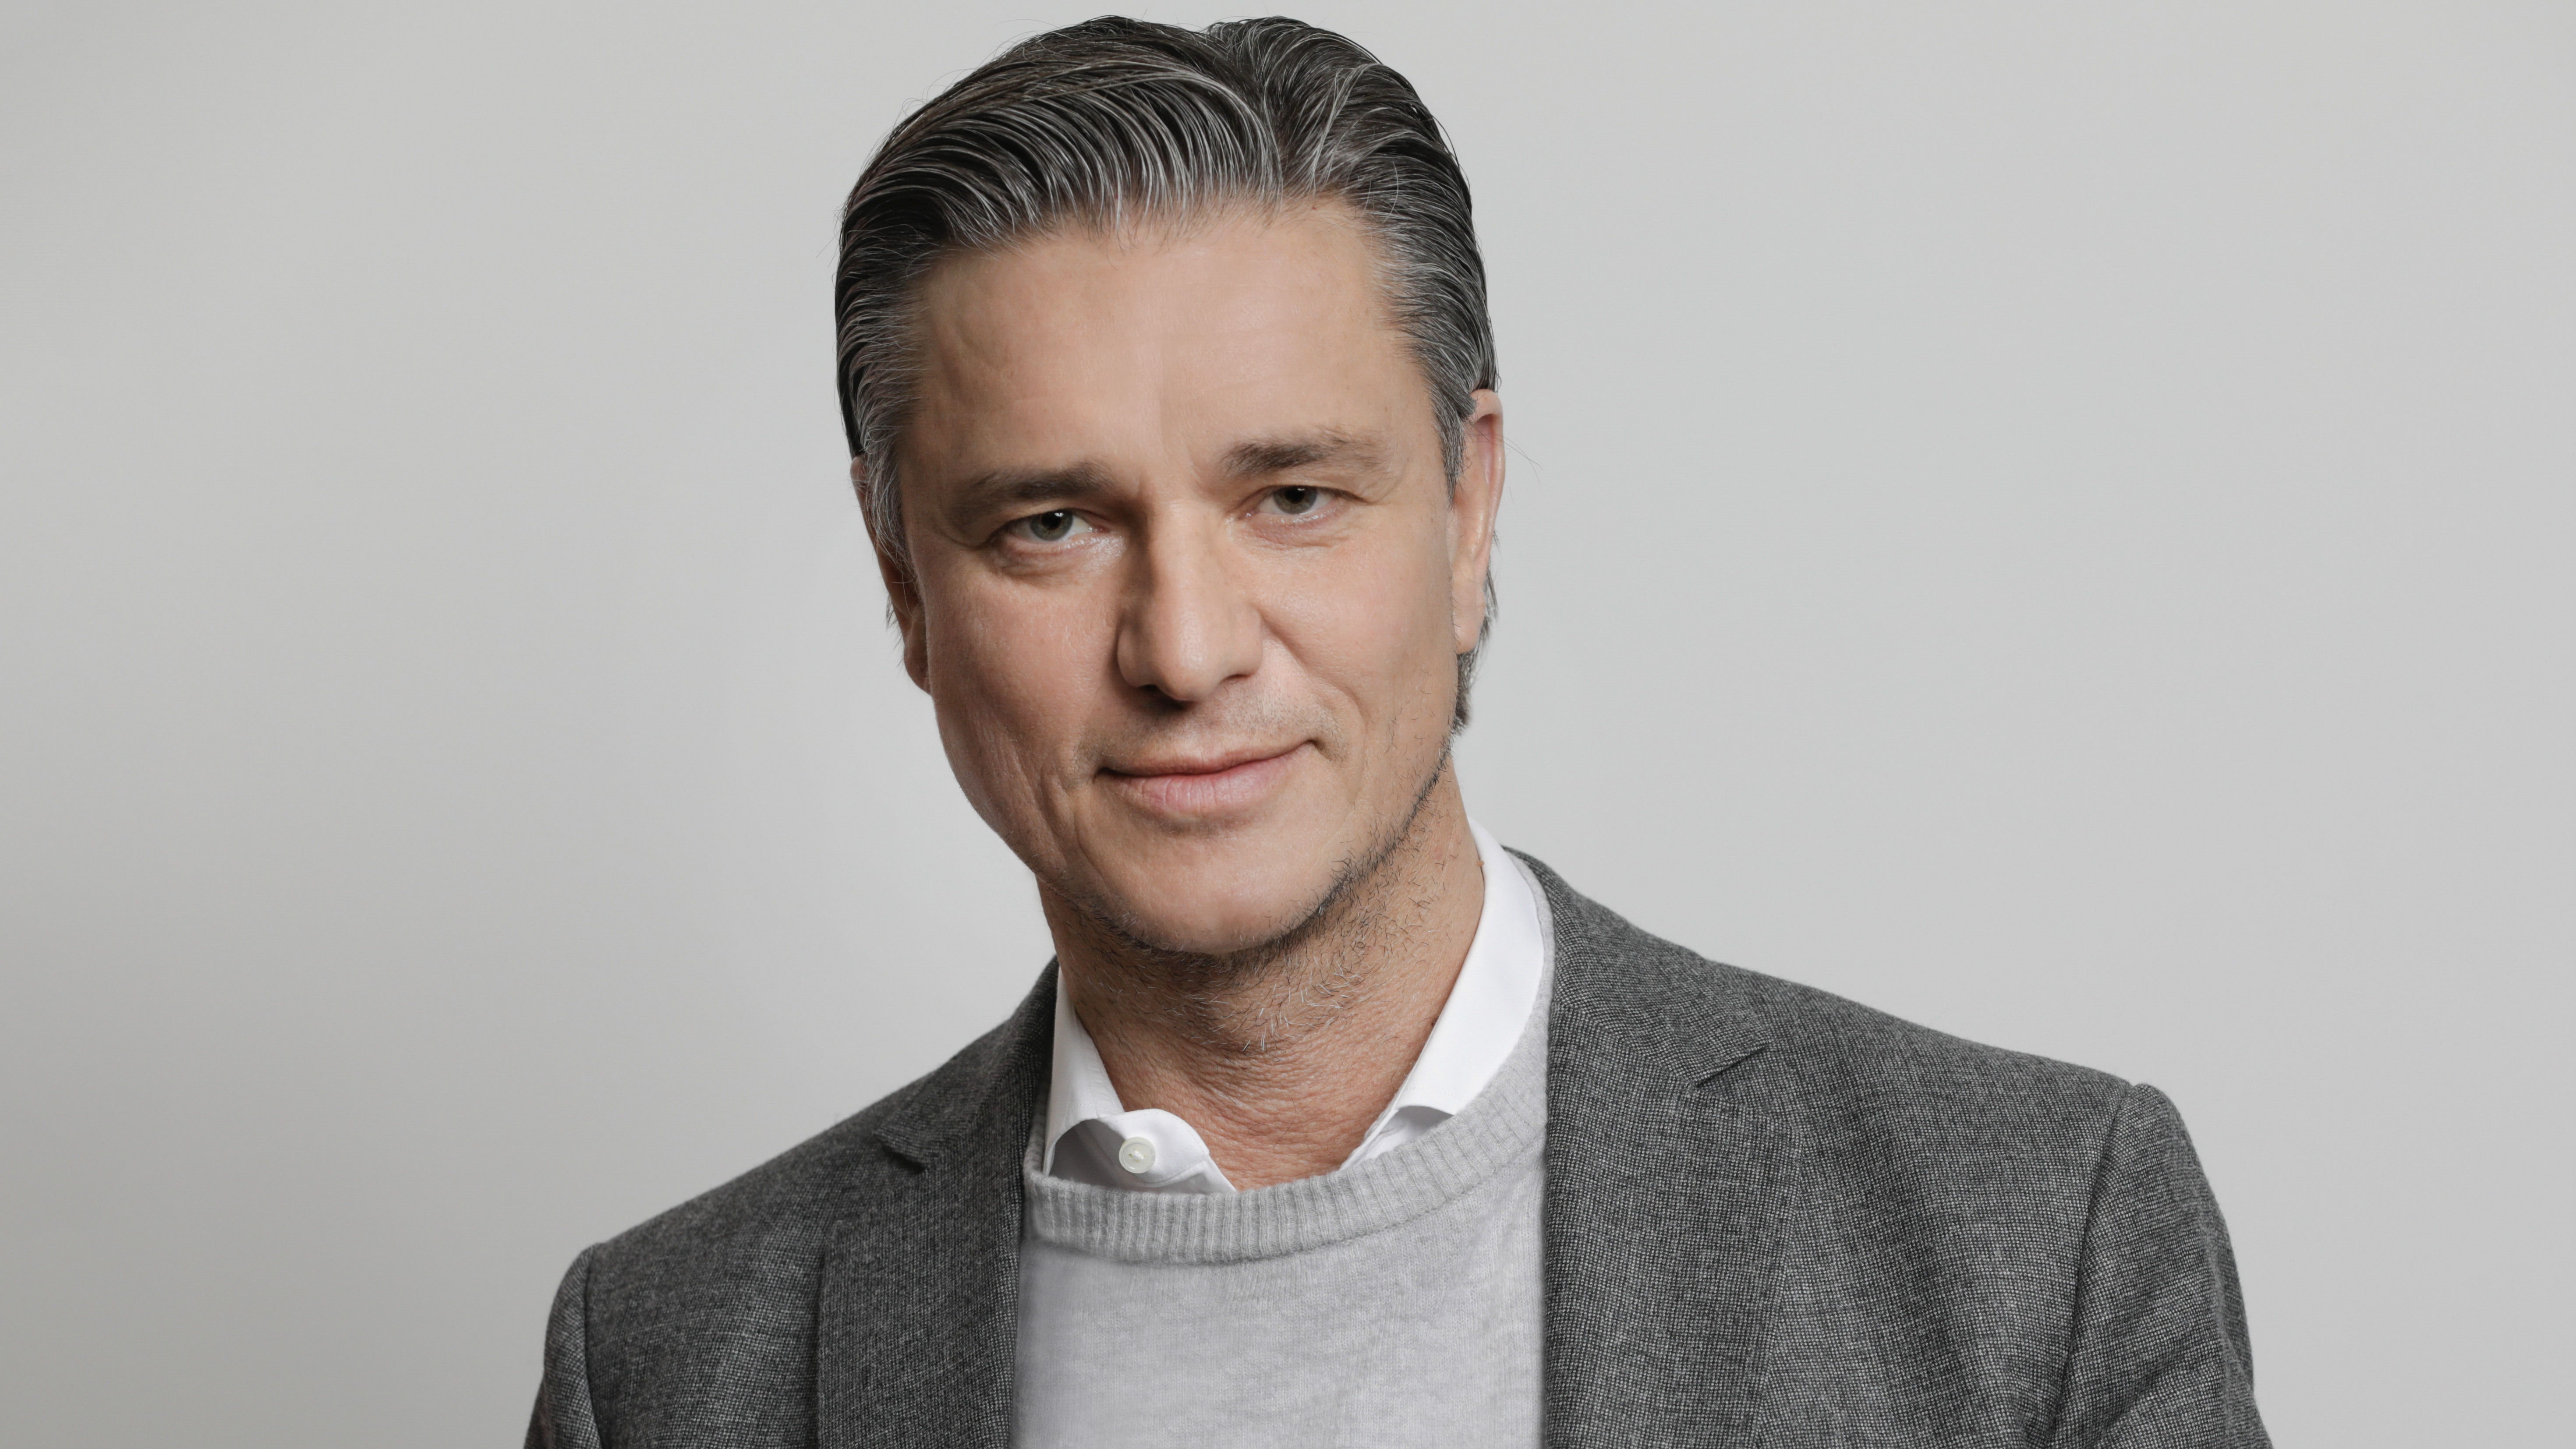 Lutz Meschke, Vicepresidente y miembro del Consejo Directivo de Porsche AG responsable de Finanzas.